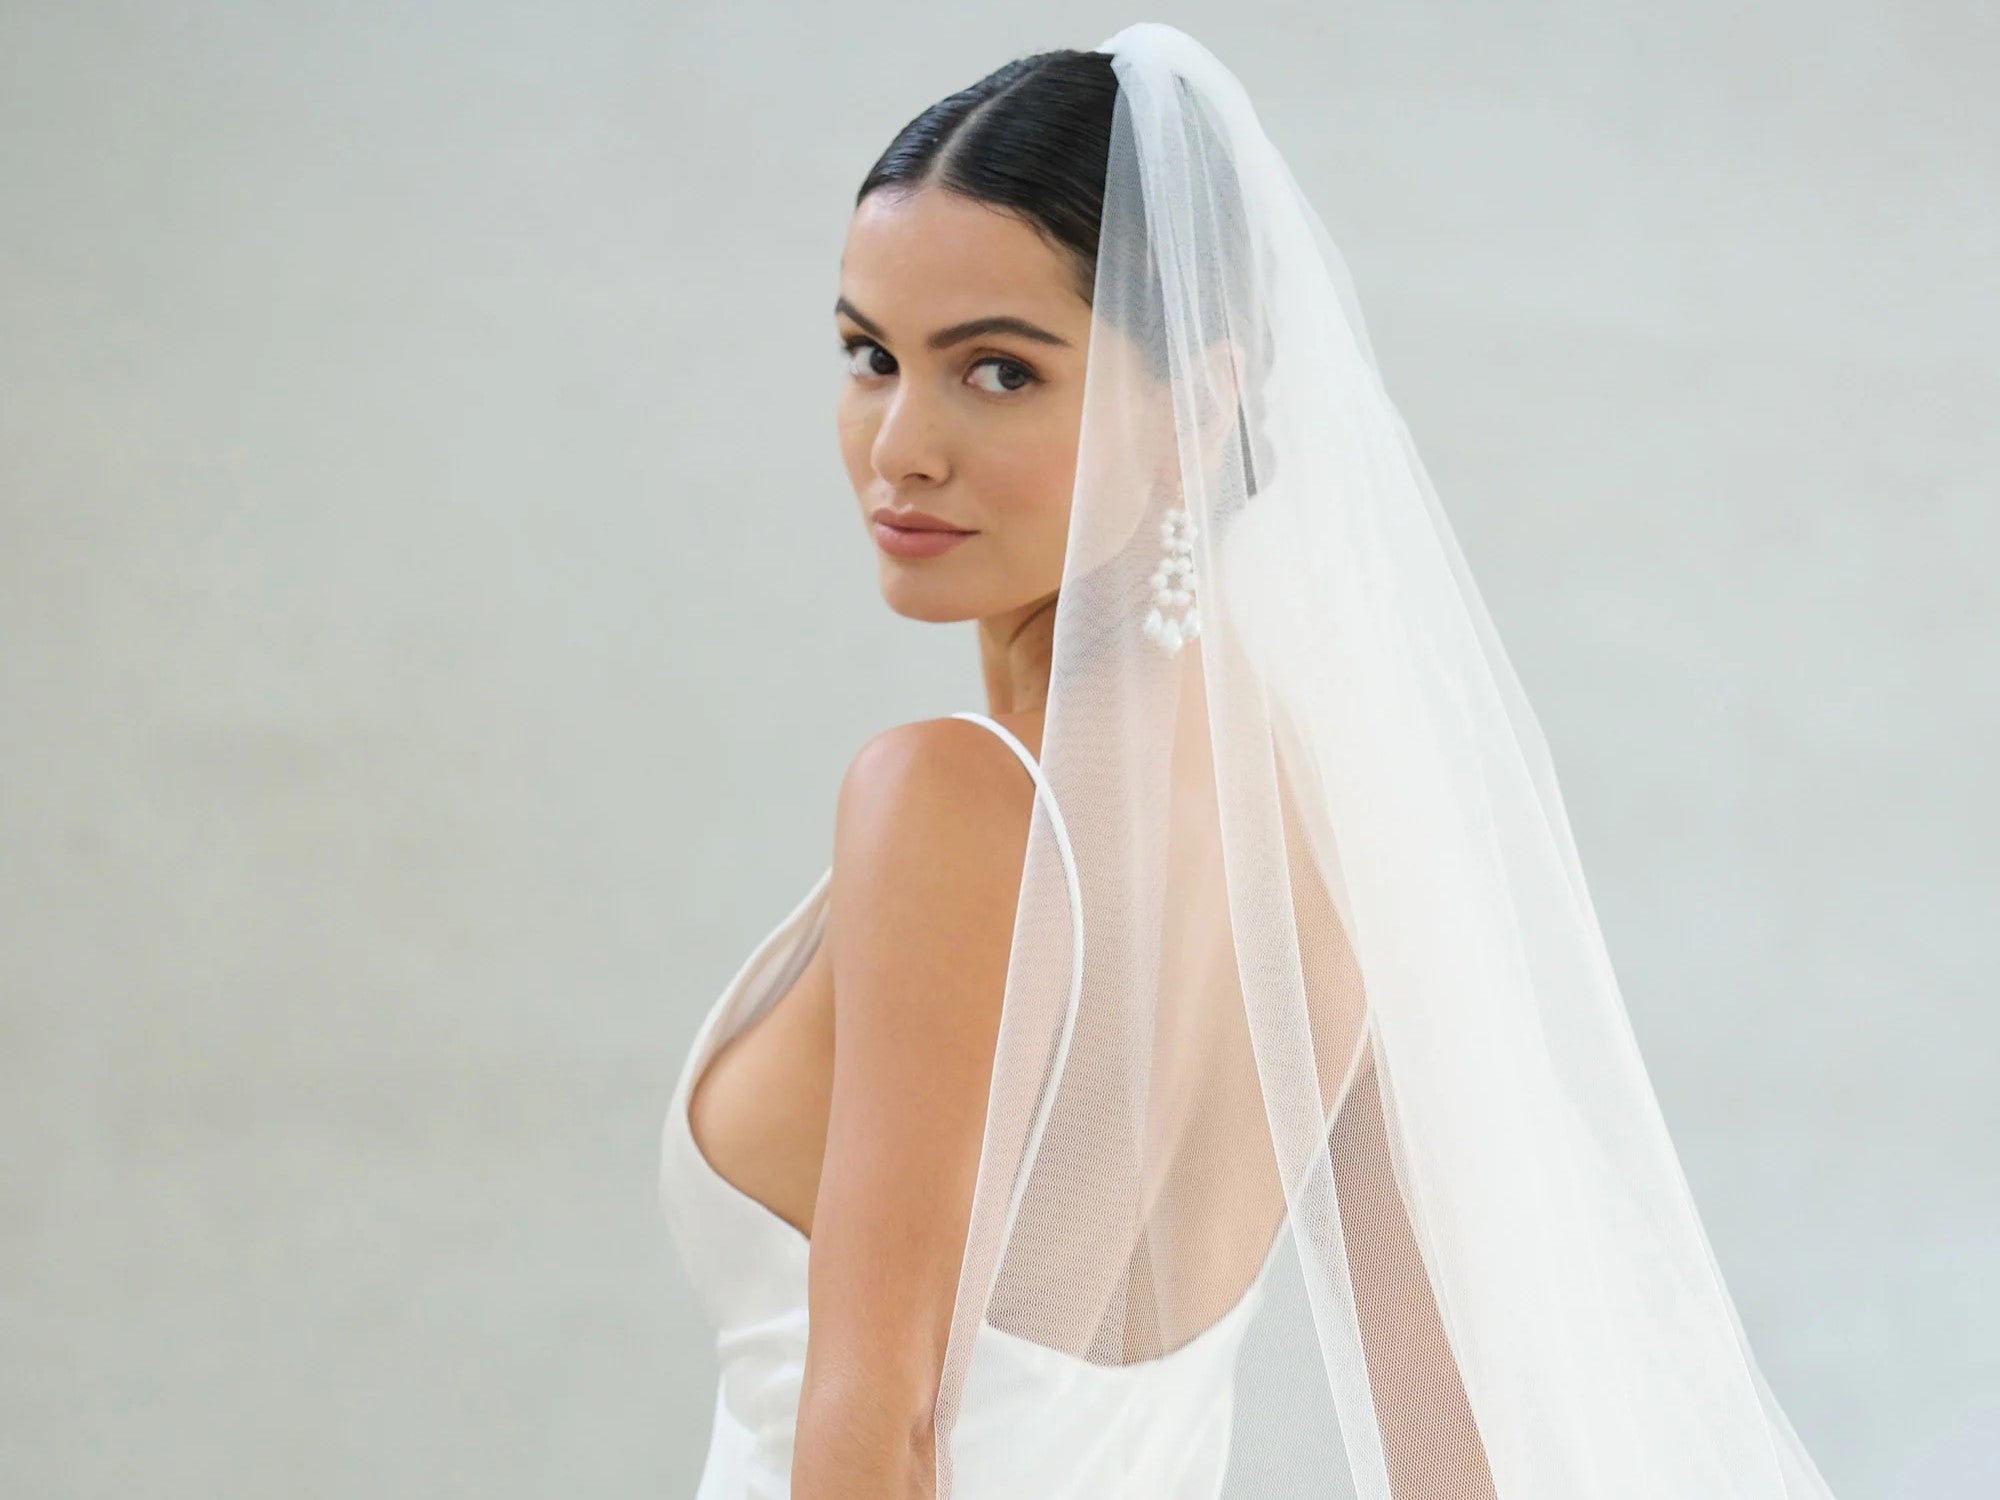 Plain Veil Designs For Every Bride